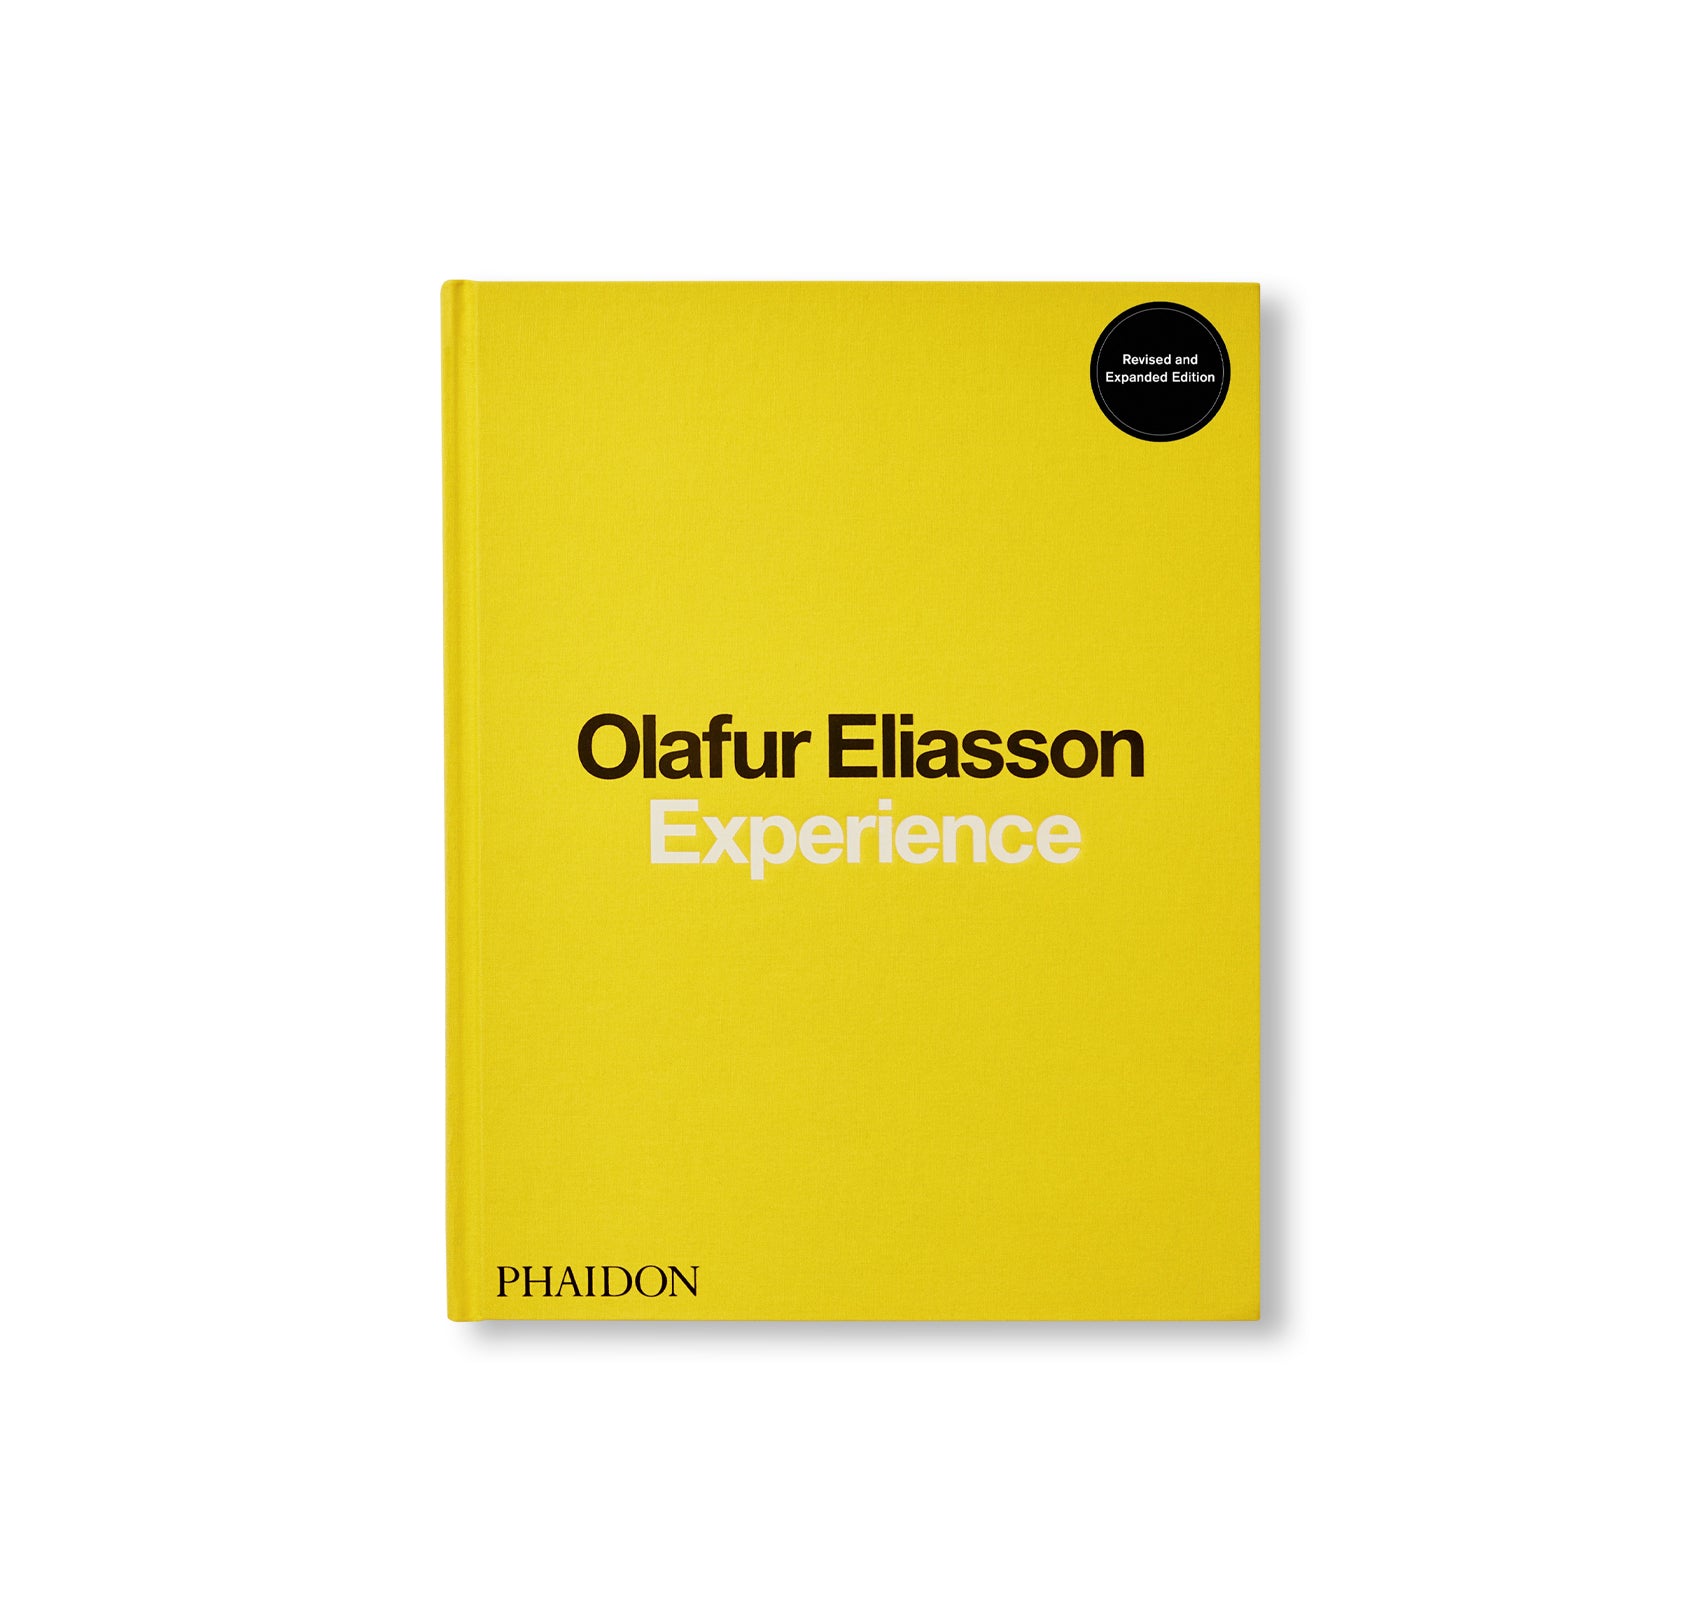 EXPERIENCE by Olafur Eliasson